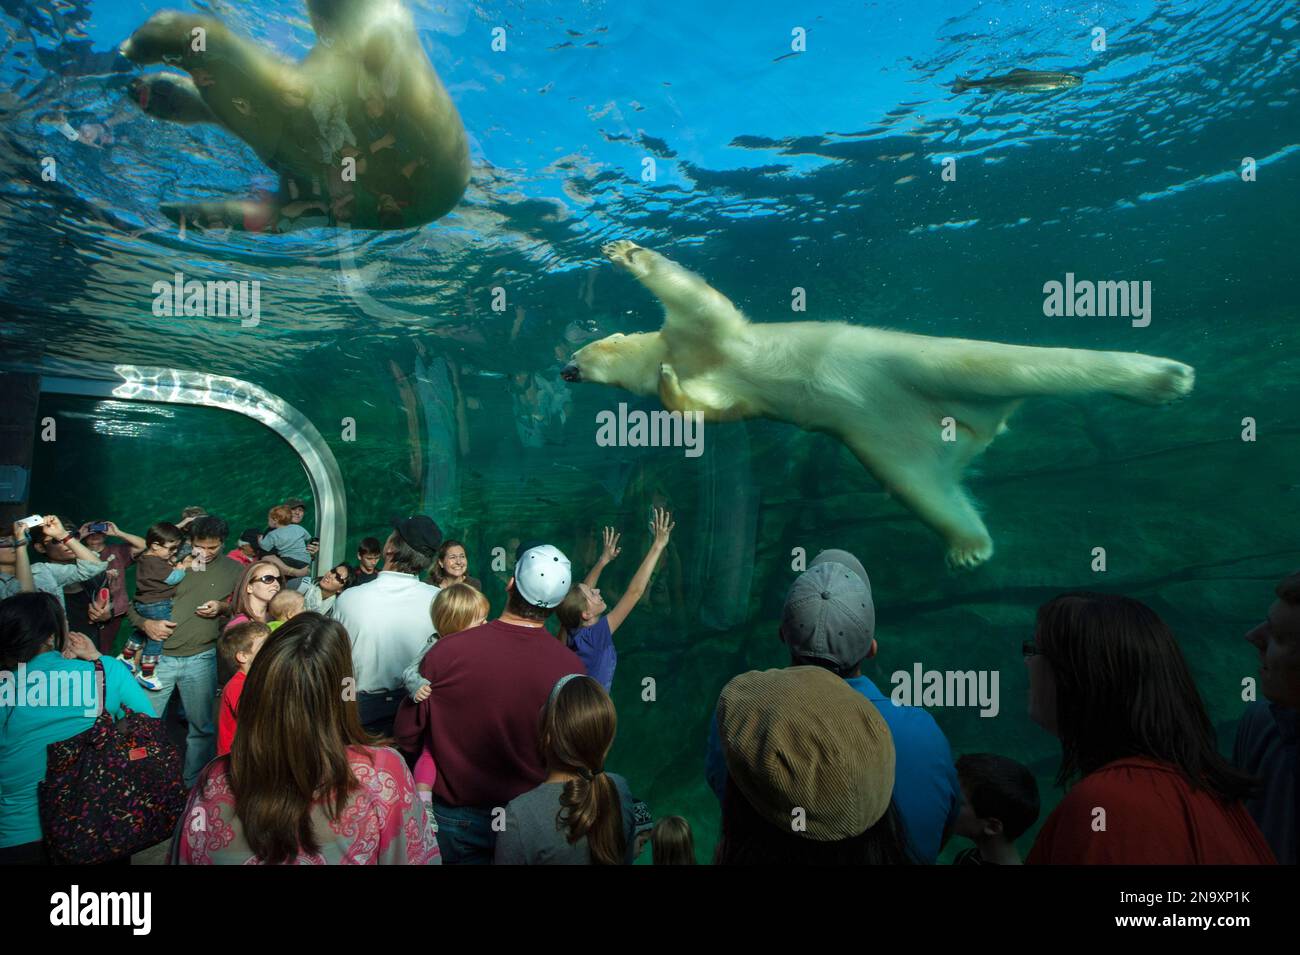 Una mostra presso lo zoo e l'acquario di Columbus, Ohio, offre una vista subacquea degli orsi polari (Ursus maritimus) Foto Stock